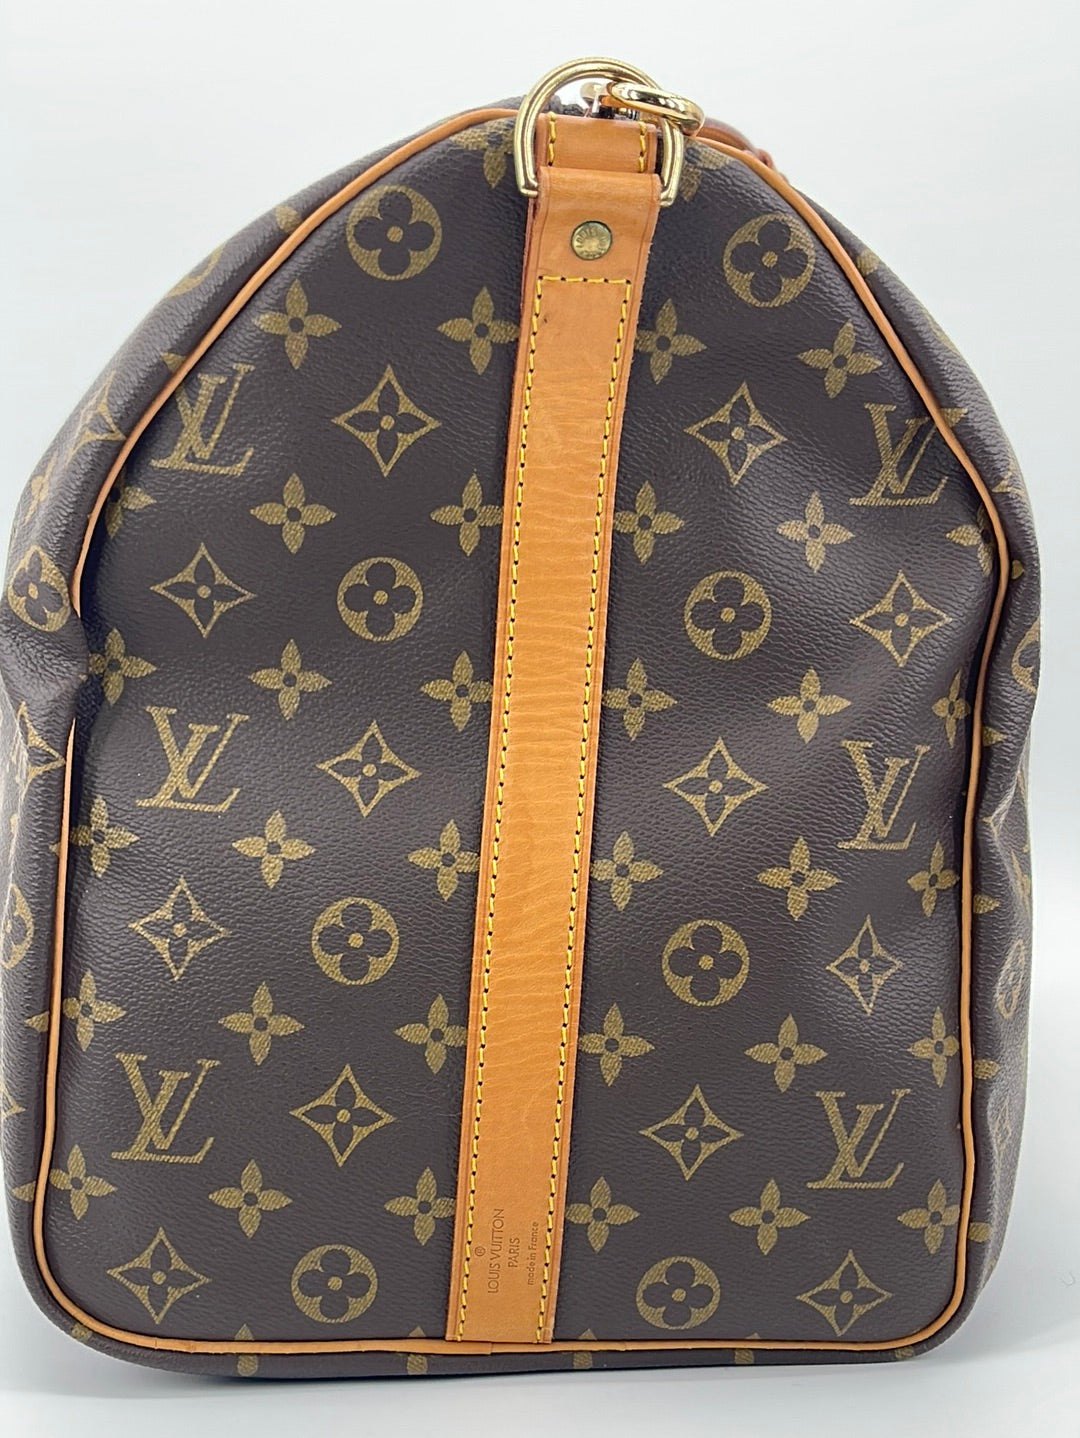 LTD 2019 Louis Vuitton Bandouliére 50 Duffle Bag sold at auction